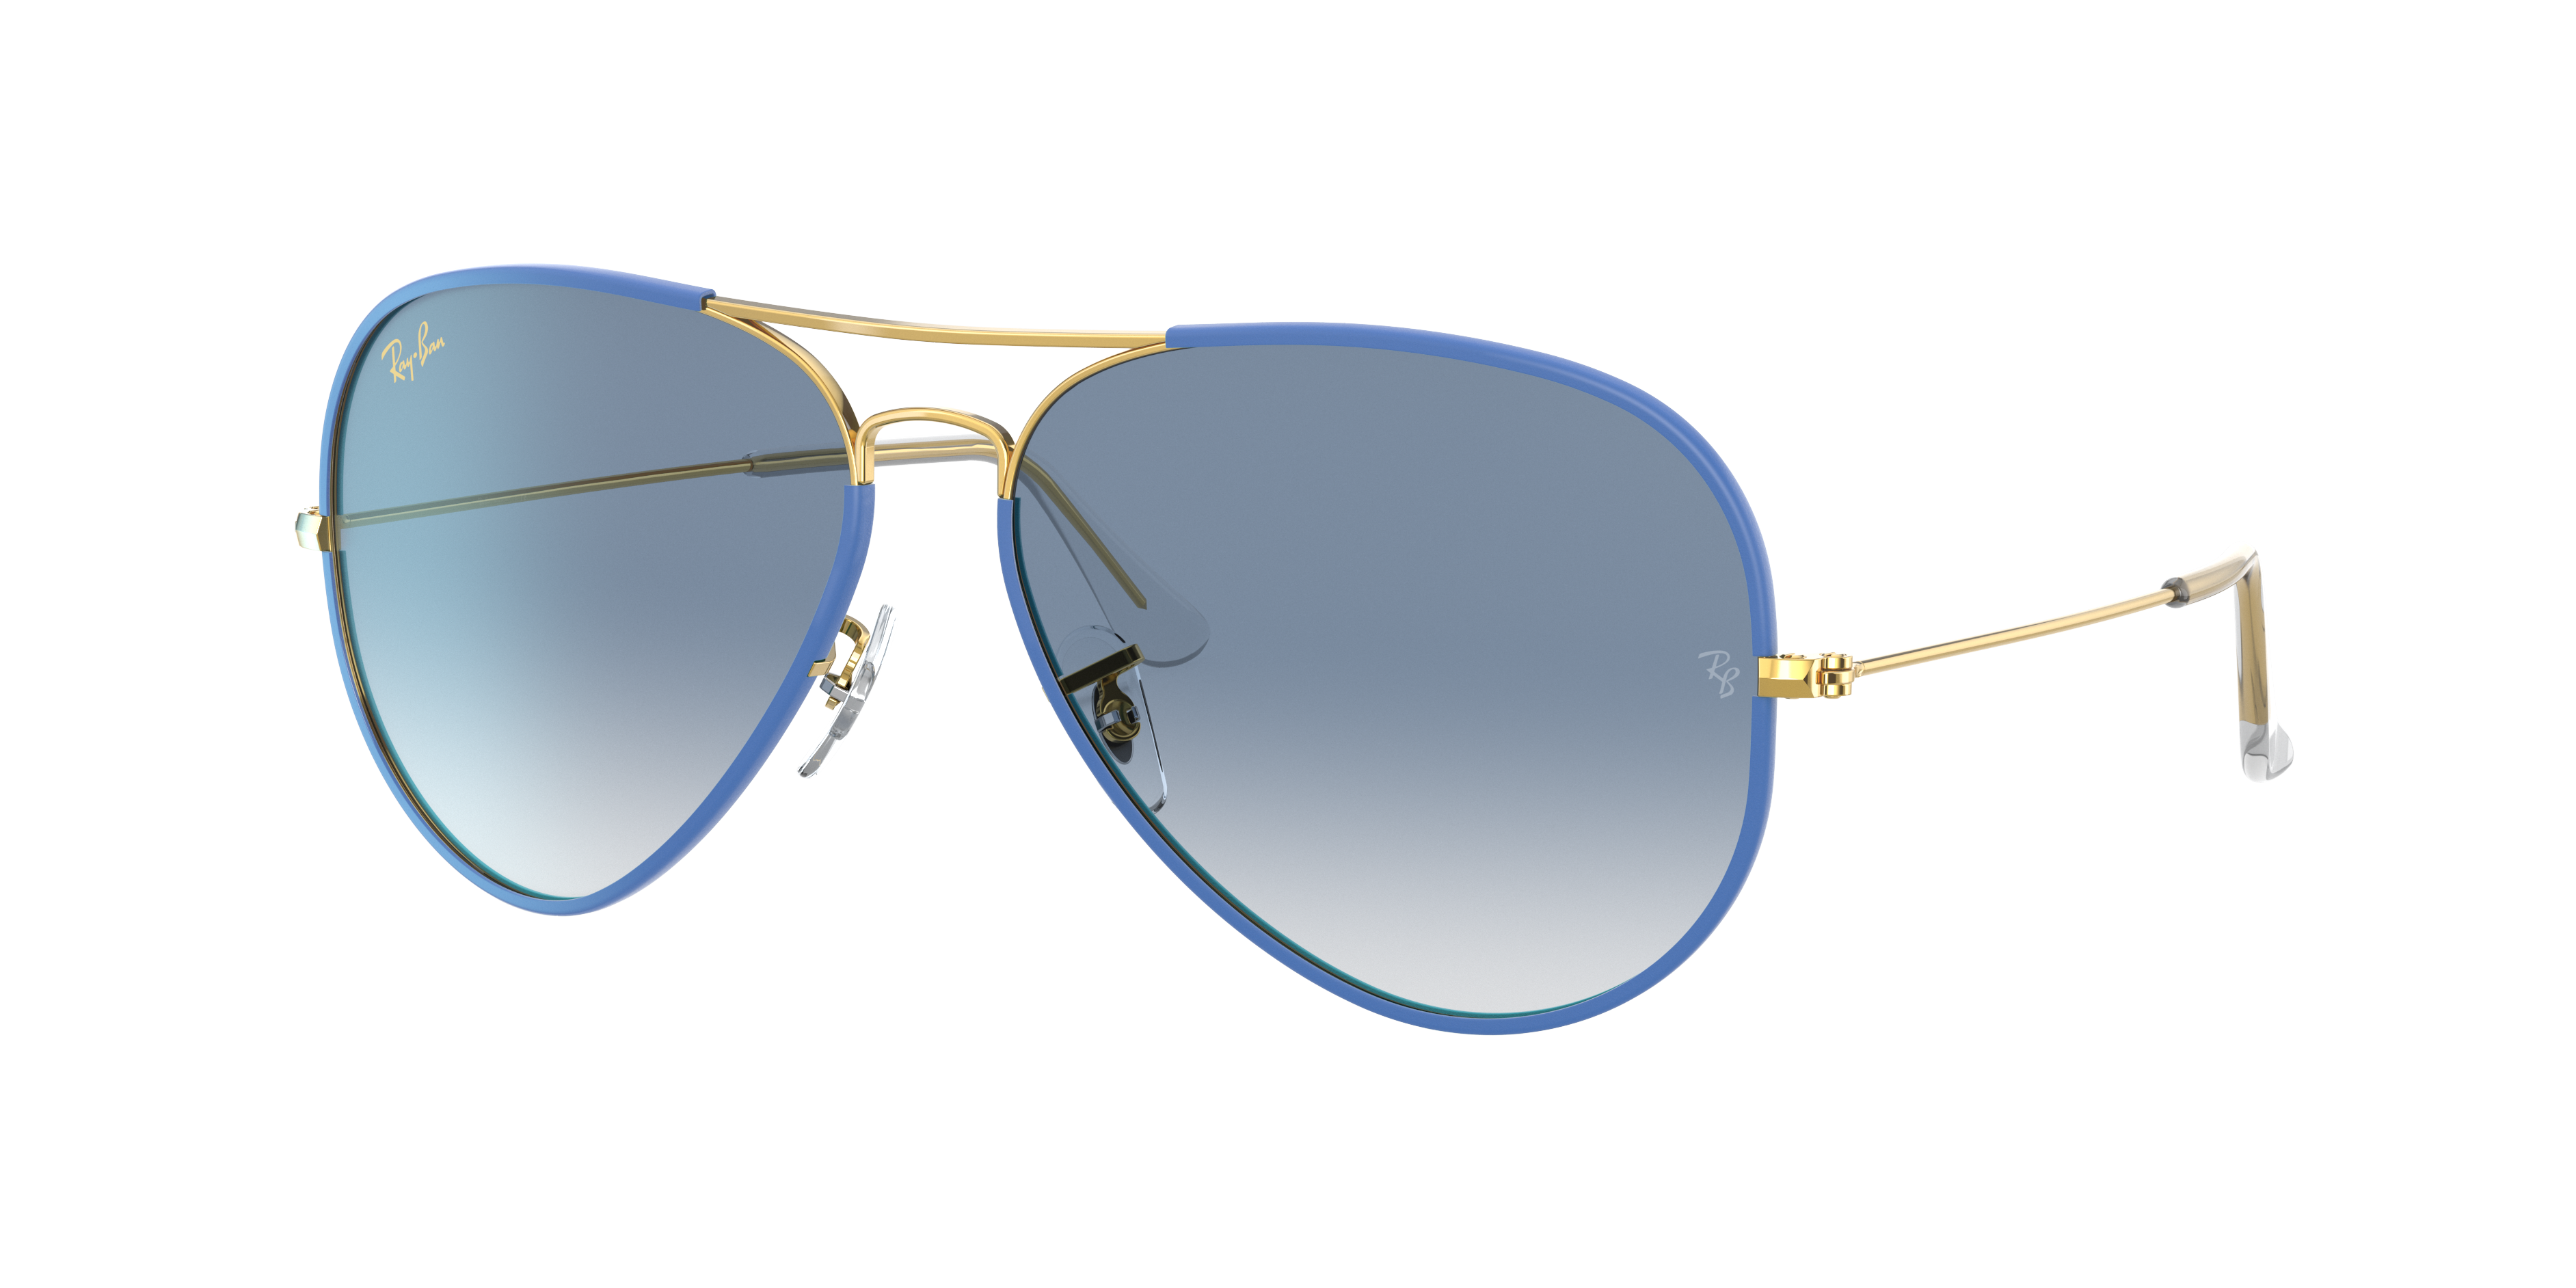 Ray Ban Aviator Full Color Legend Sunglasses Gold Frame Blue Lenses 58-14